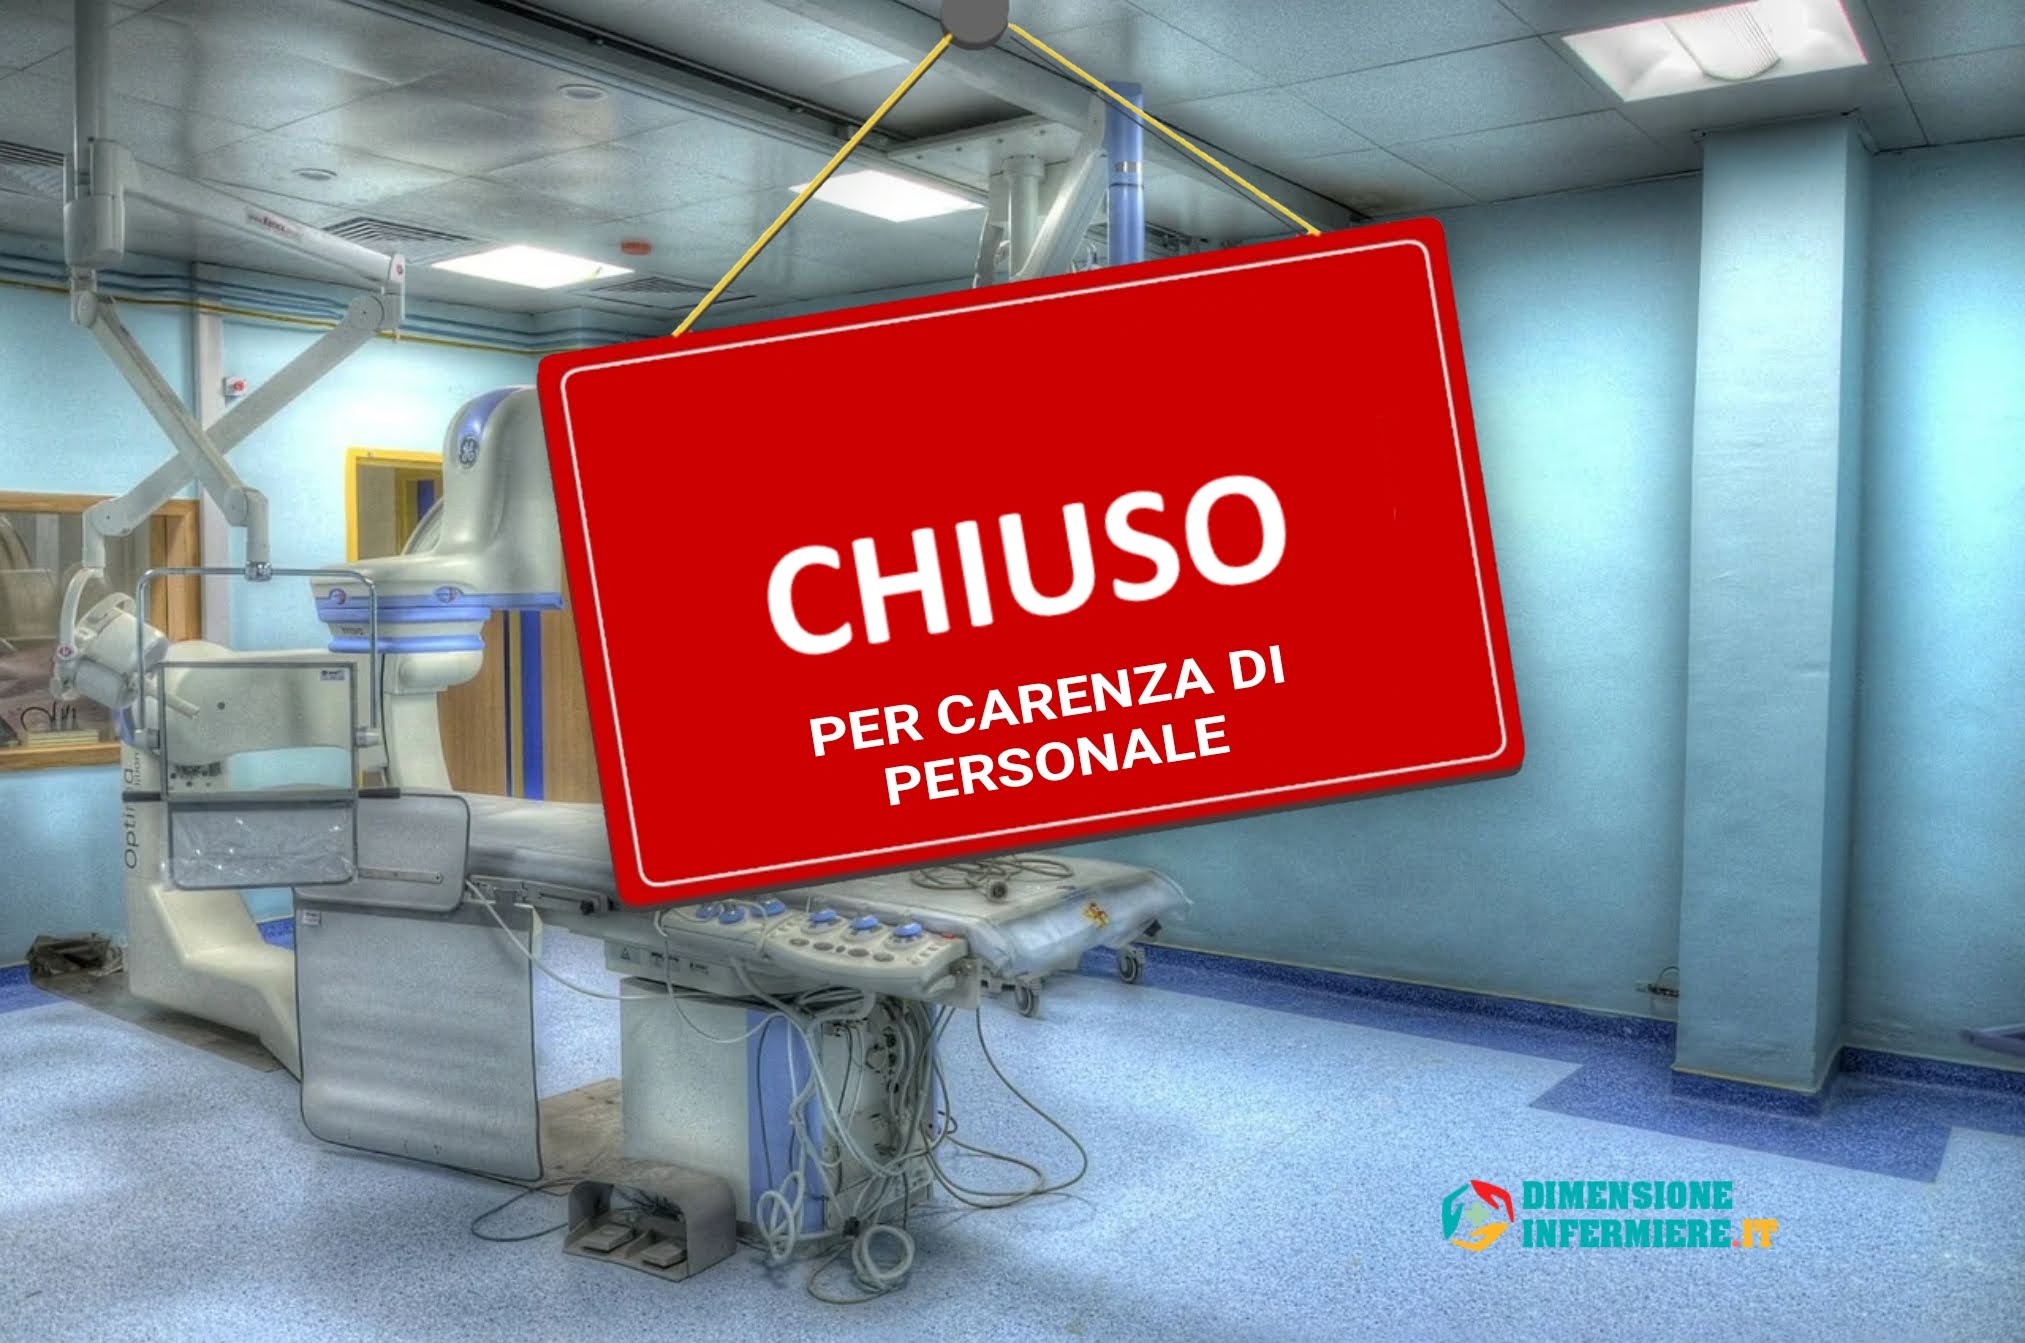 www.dimensioneinfermiere.it